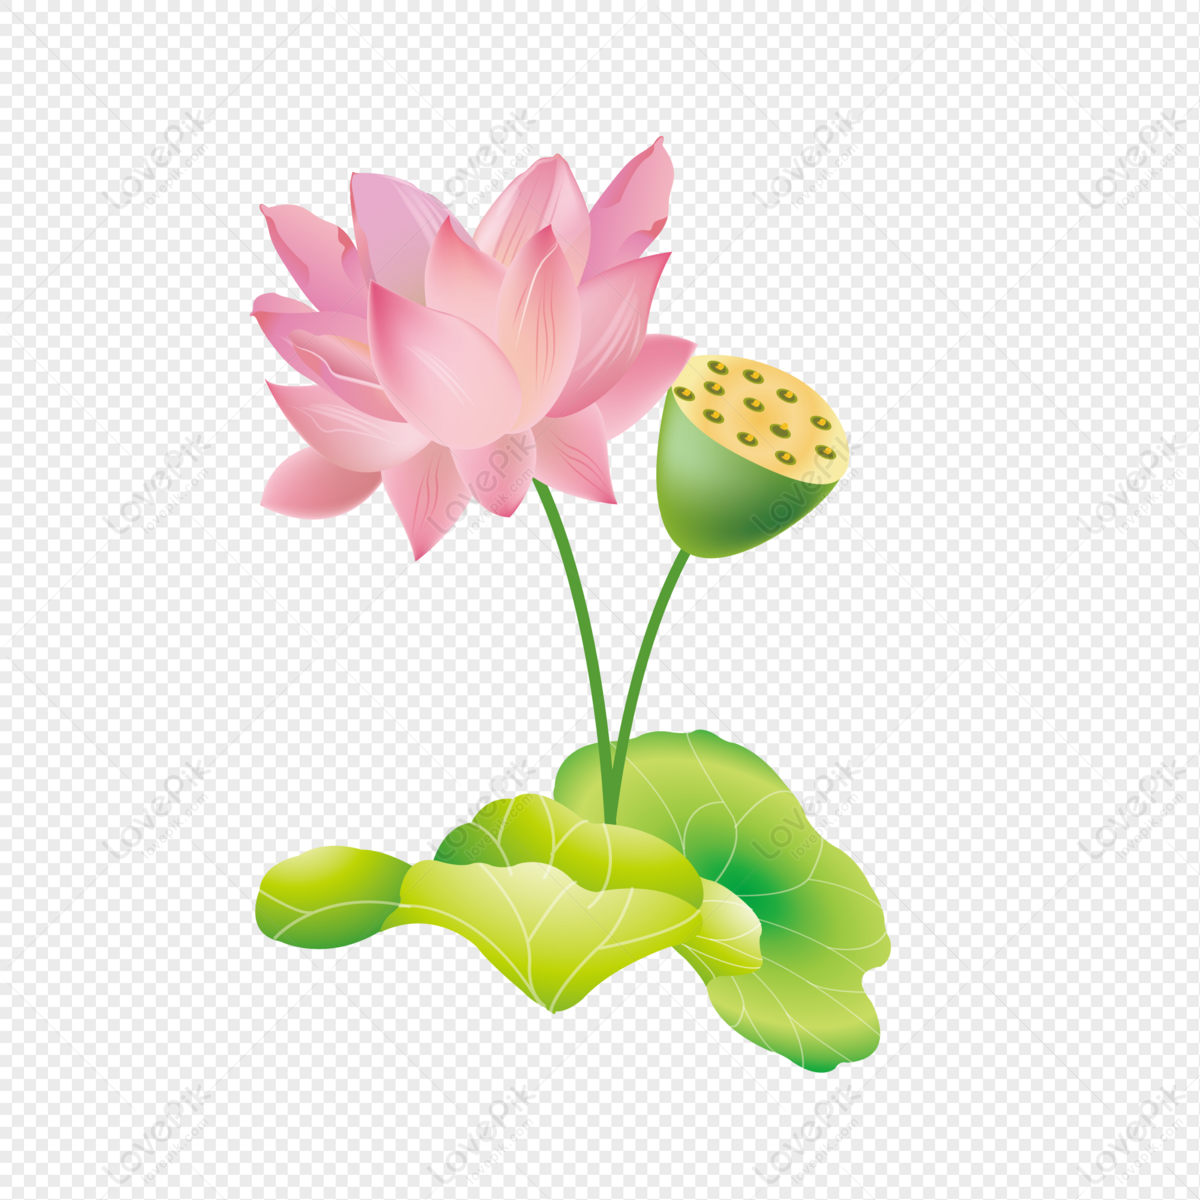 Lotus PNG đẹp không chỉ là hình ảnh nghệ thuật tuyệt đẹp mà còn là một tài nguyên hữu ích cho các nghệ sĩ, thiết kế nhà phát triển ứng dụng, trang web và hơn thế nữa. Nếu bạn đang tìm kiếm những hình ảnh lotus PNG đẹp, hãy xem ngay ảnh kèm theo để khám phá bộ sưu tập hình ảnh đặc sắc này.